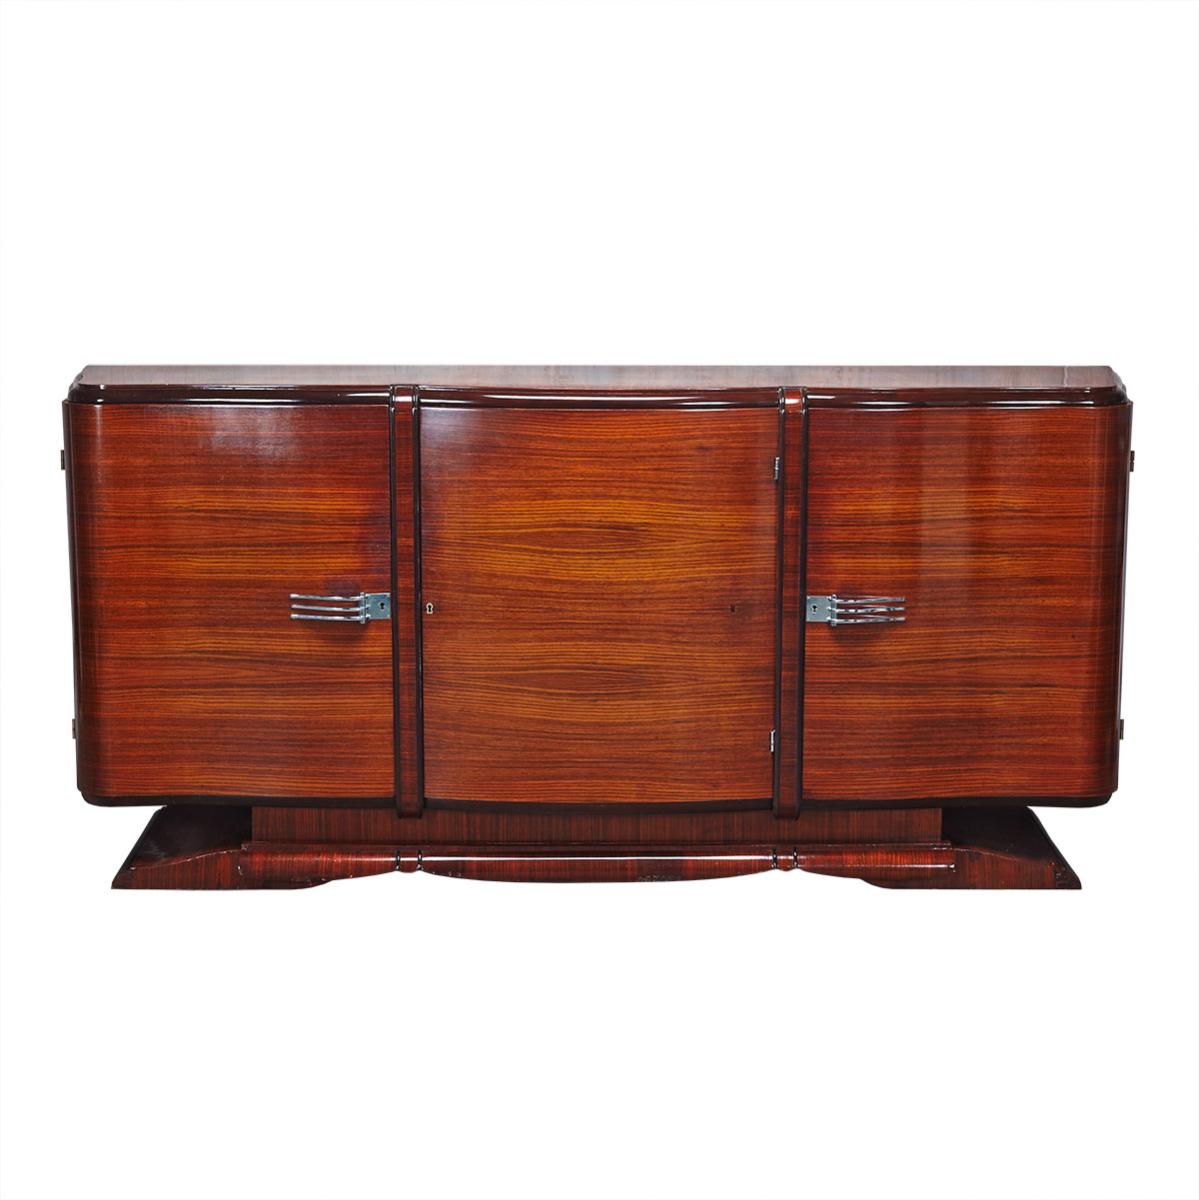 Large French Art Deco Rosewood and Ebonized Wood Sideboard, c.1930